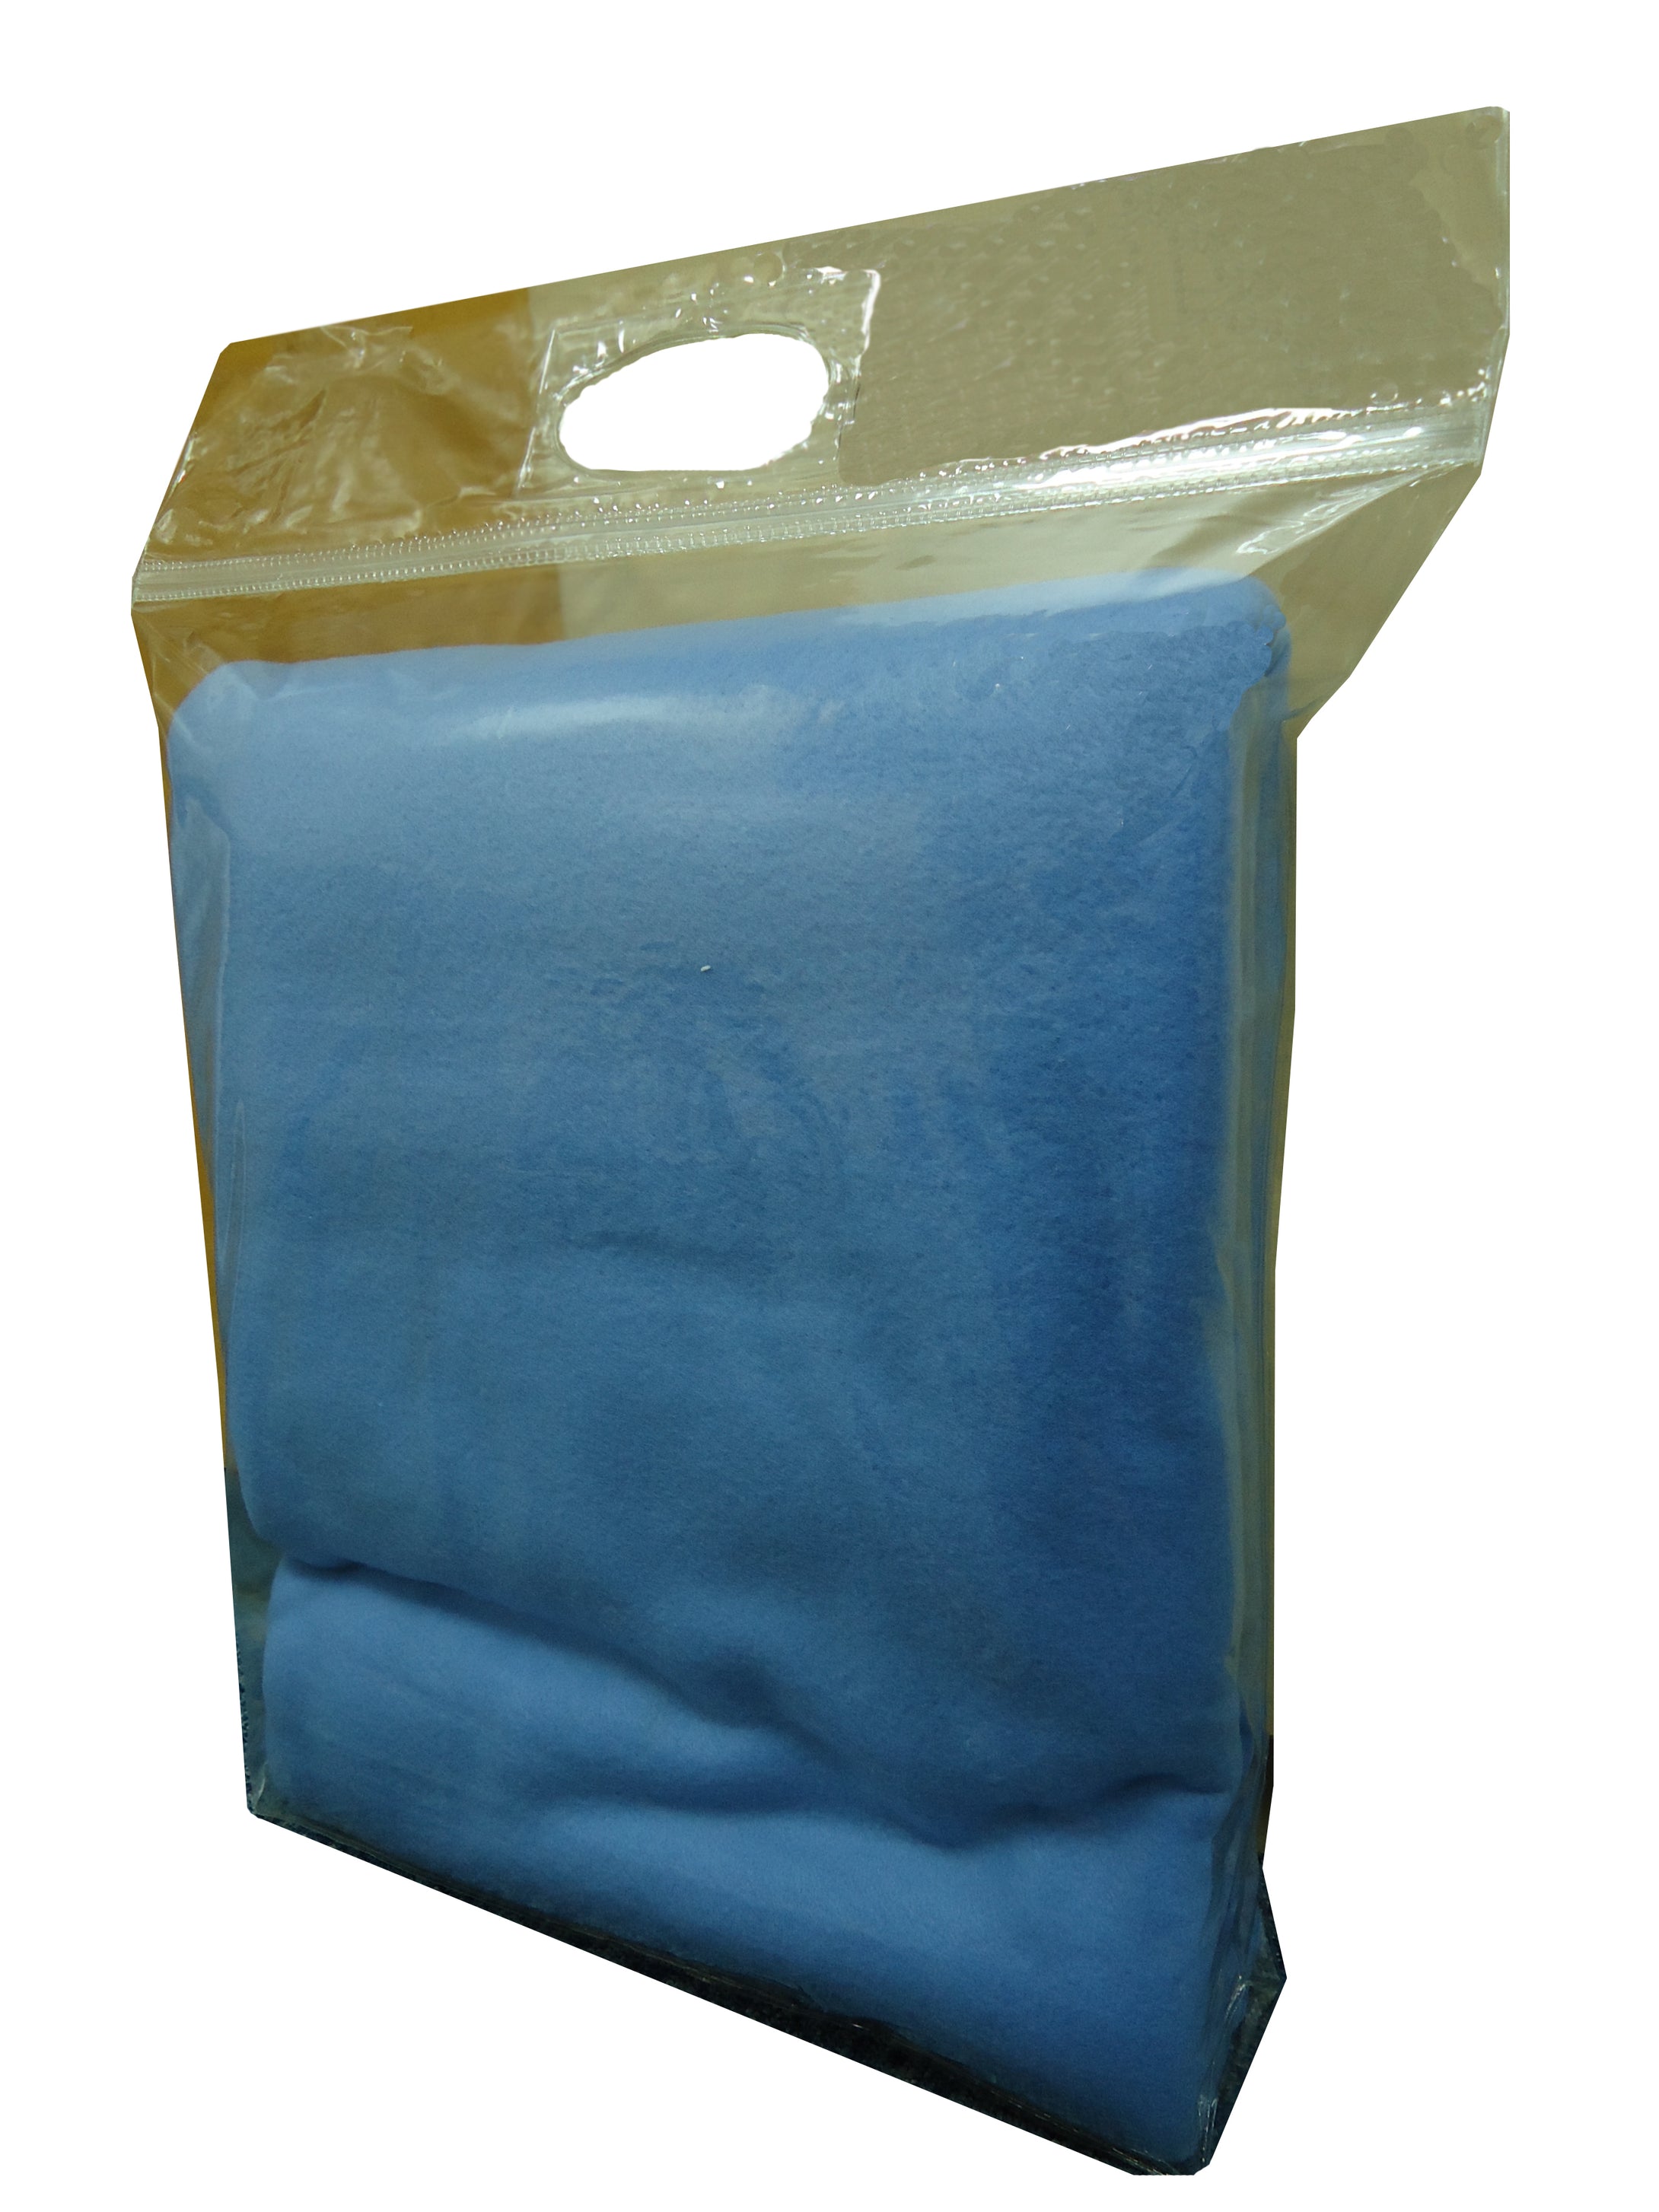 JLHS-0014 Heat-Sealed Bag